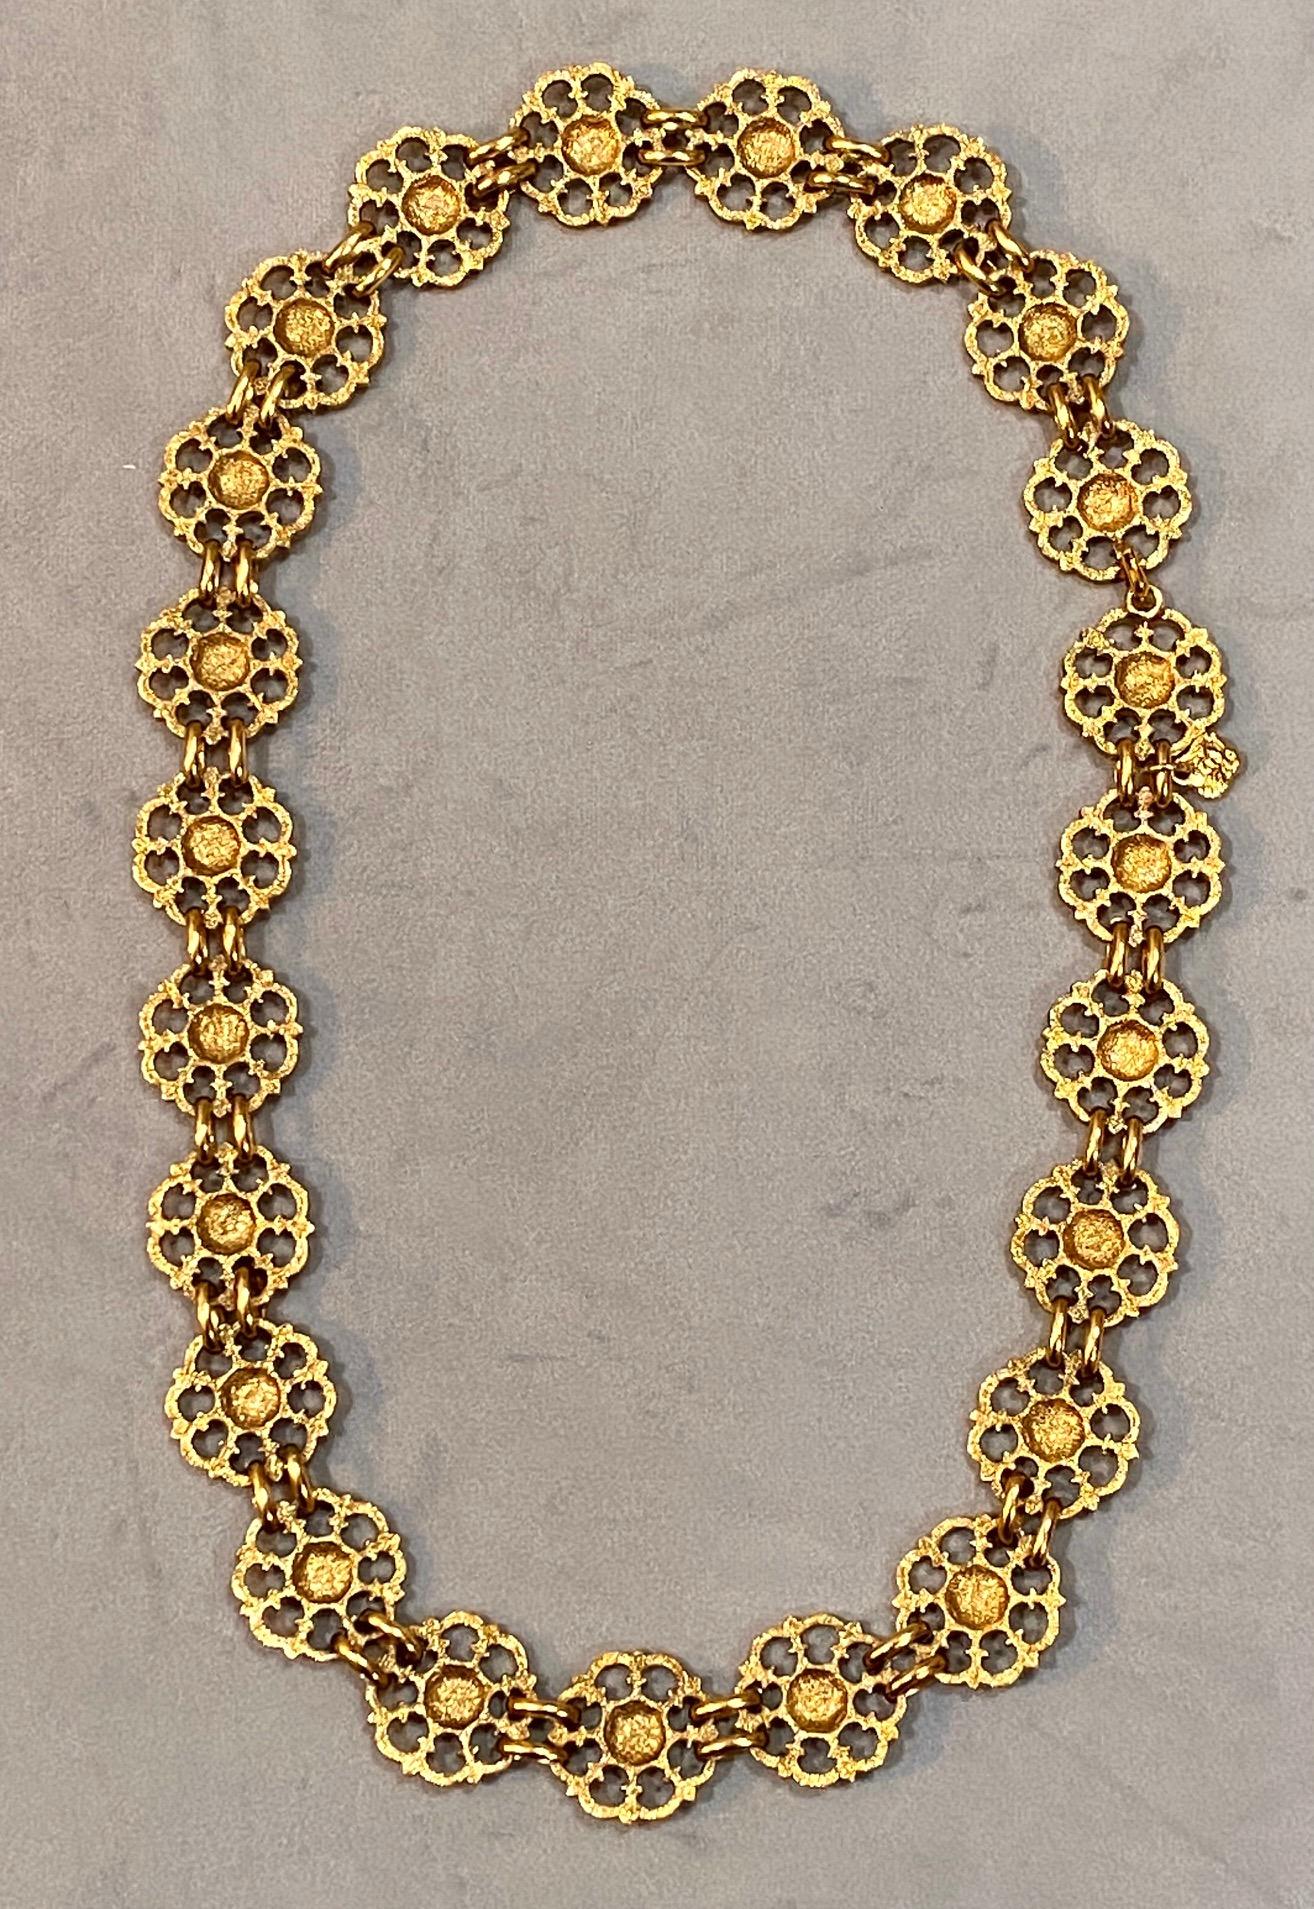 Yves Saint Laurent, Rive Gauche, 1980s Necklace / Belt For Sale 8